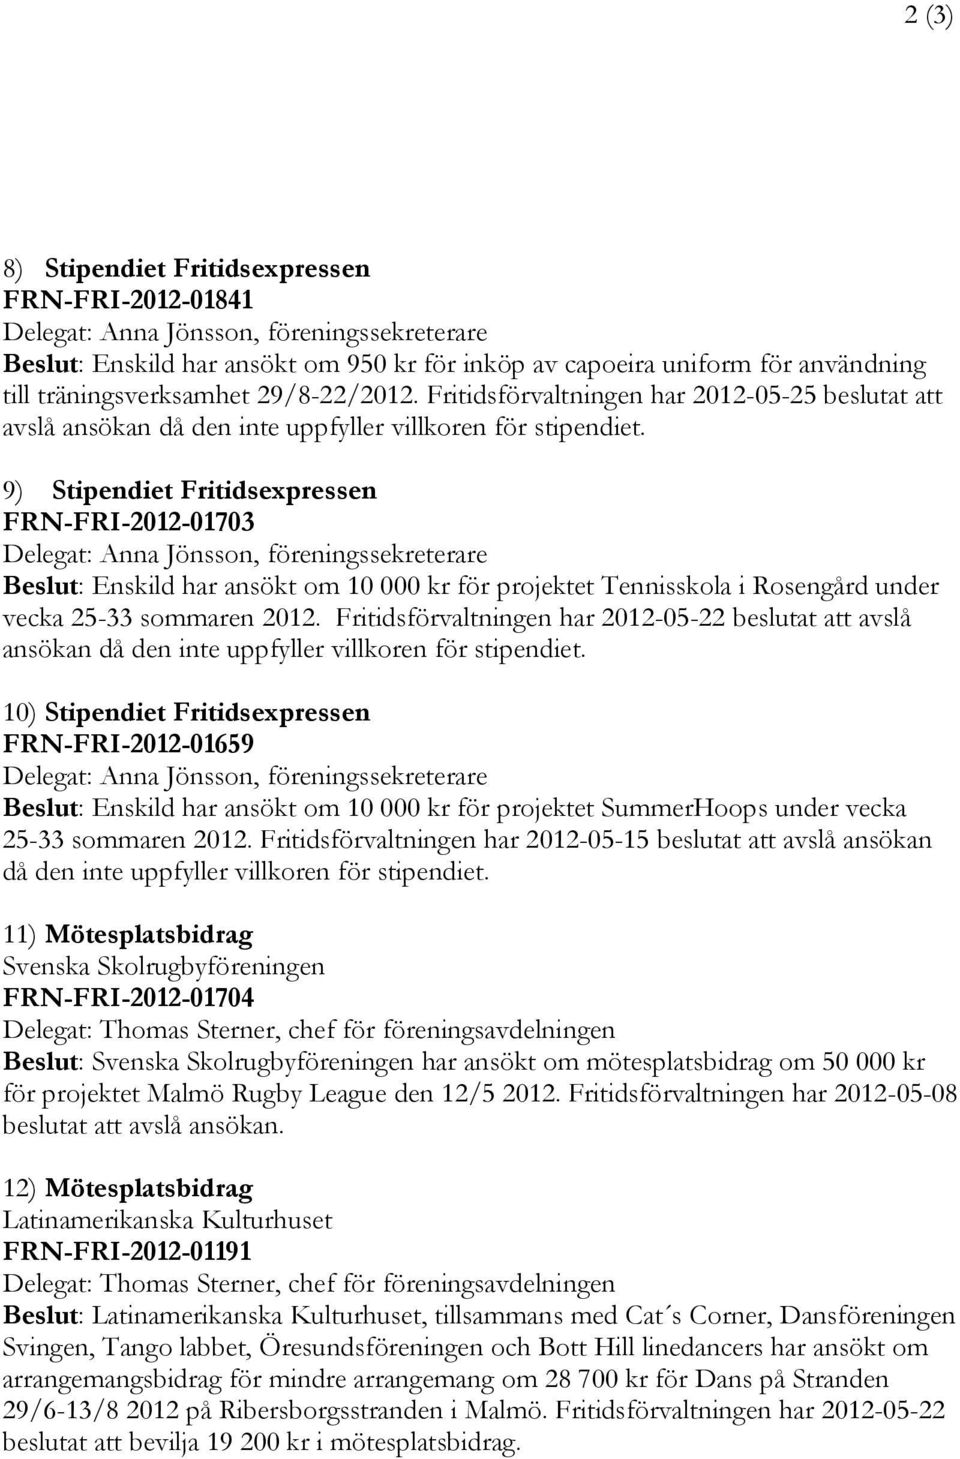 9) Stipendiet Fritidsexpressen FRN-FRI-2012-01703 Beslut: Enskild har ansökt om 10 000 kr för projektet Tennisskola i Rosengård under vecka 25-33 sommaren 2012.